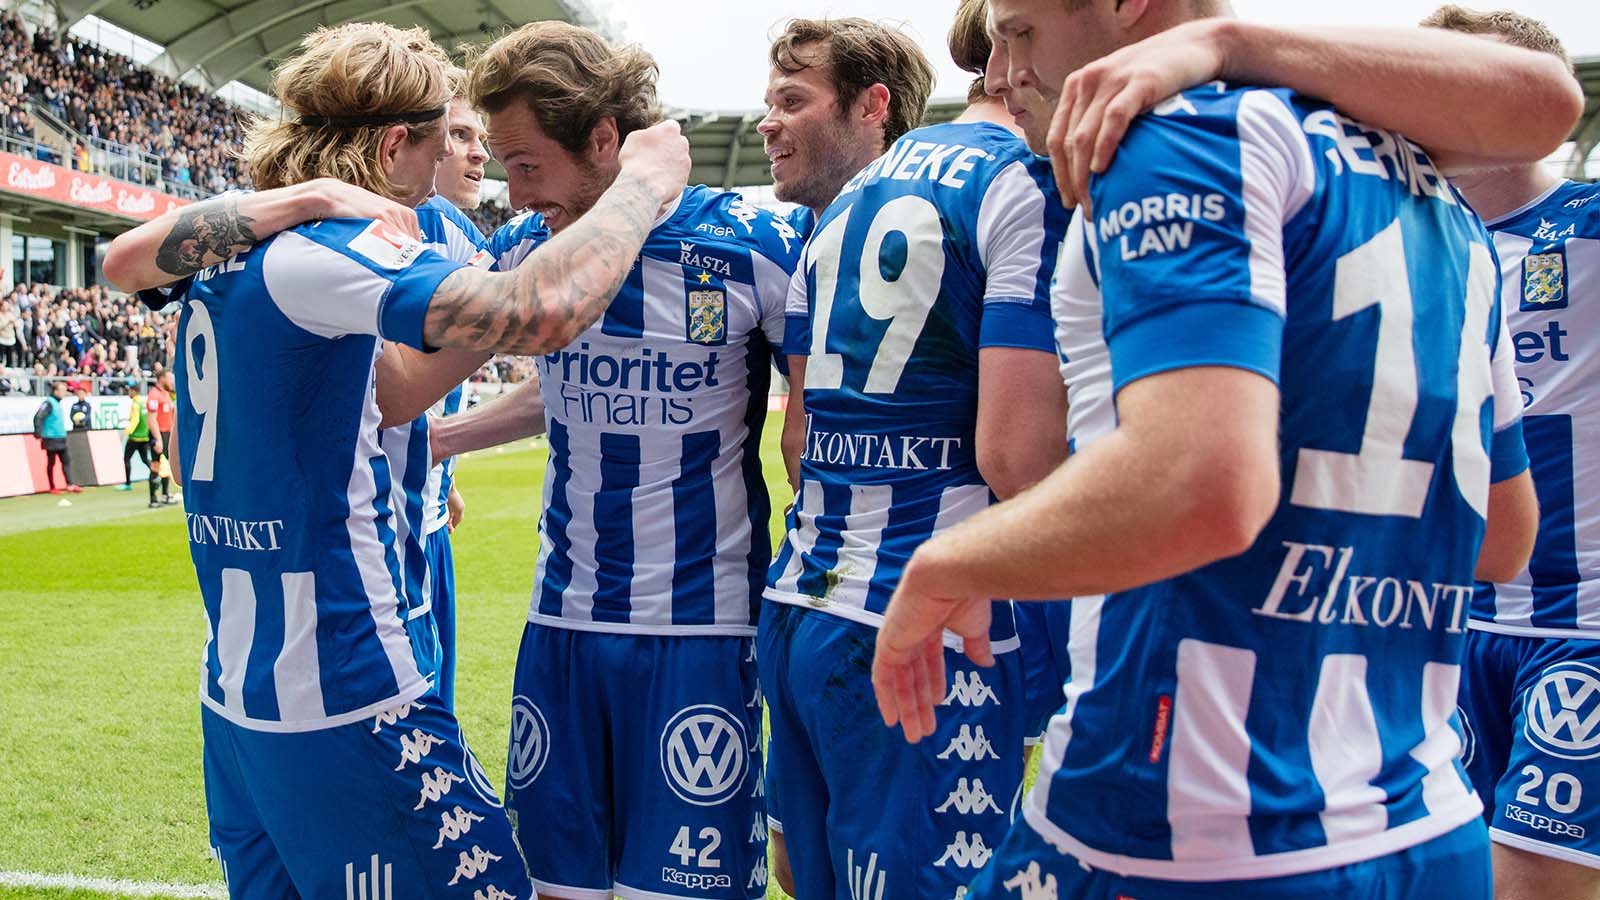 180428 IFK Göteborg firar Elias Mar Omarssons 2-0 mål under fotbollsmatchen i allsvenskan mellan IFK Göteborg och Häcken den 28 april 2018 i Göteborg. Foto: Michael Erichsen / BILDBYRÅN / Cop 89